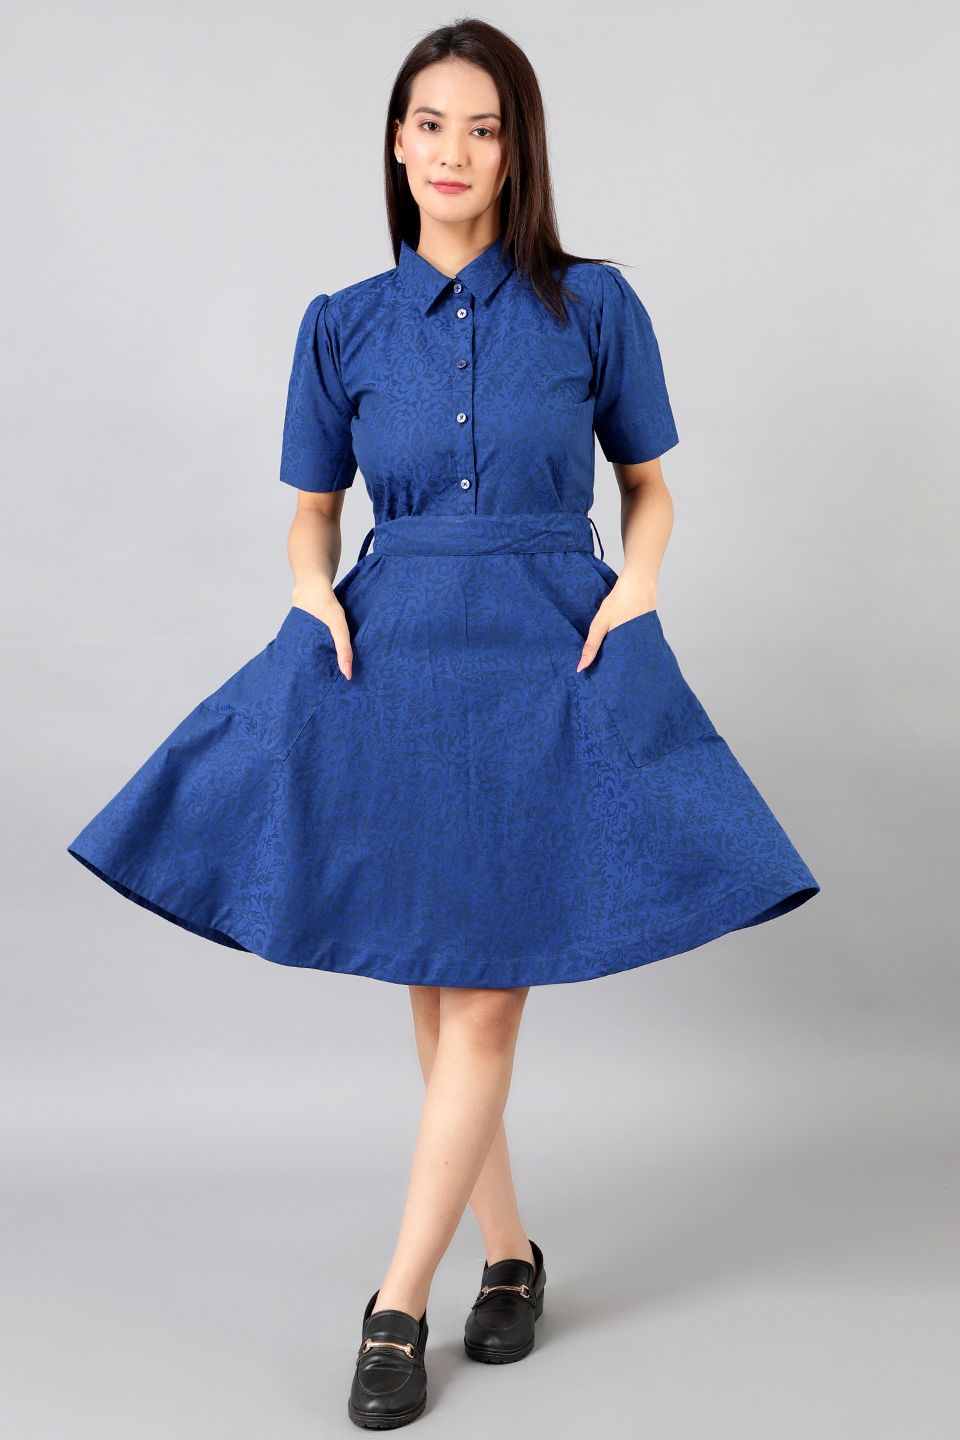 Cotton Linen Mini Blue Dress